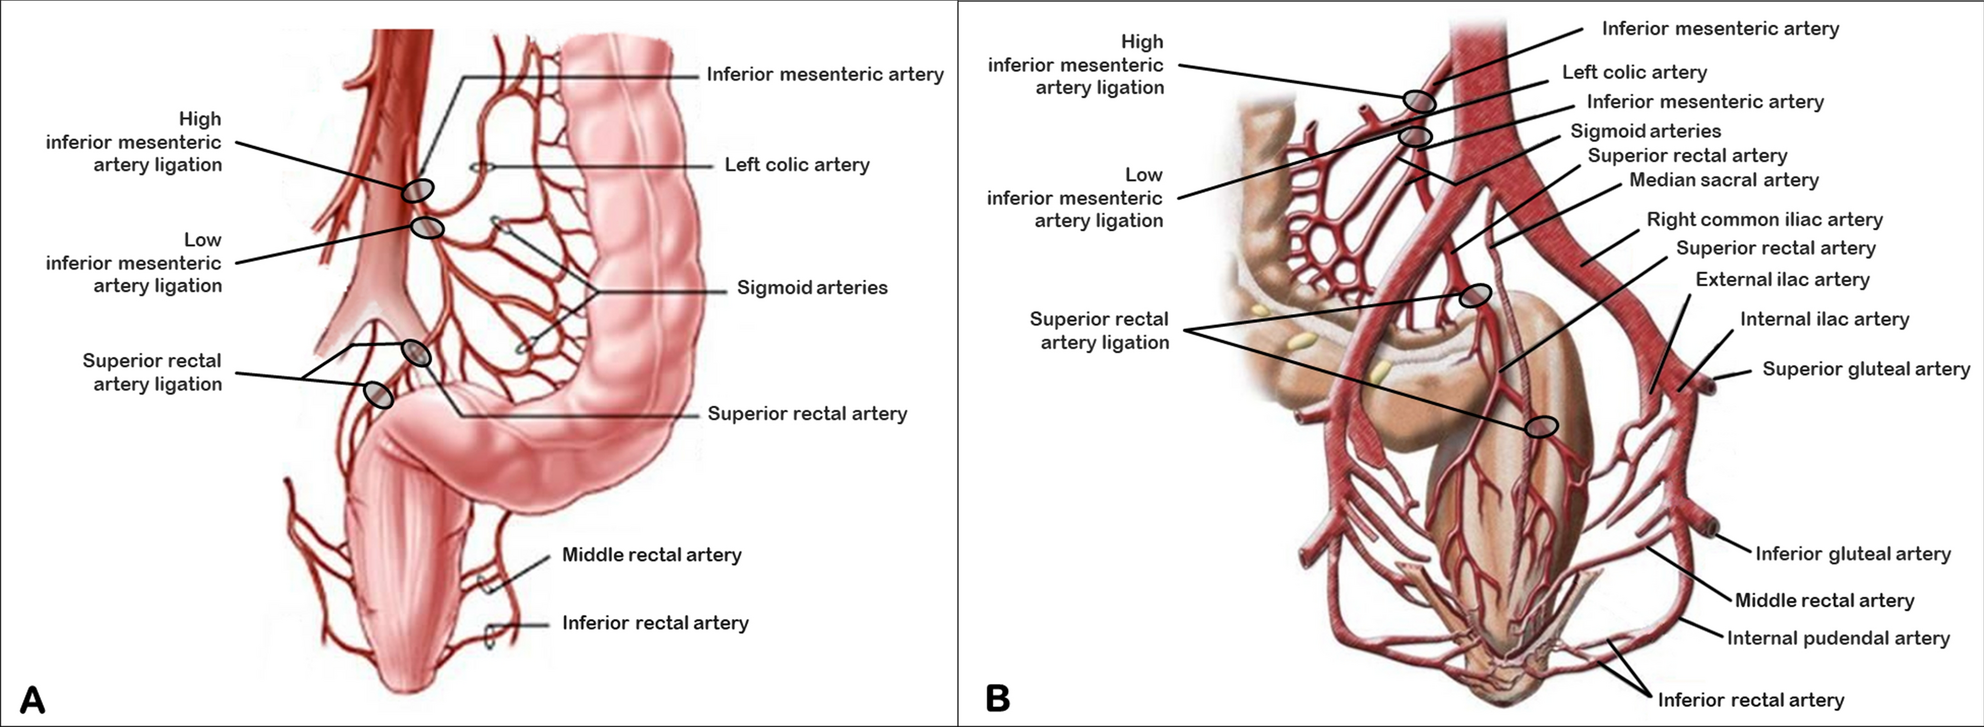 superior mesenteric artery branches